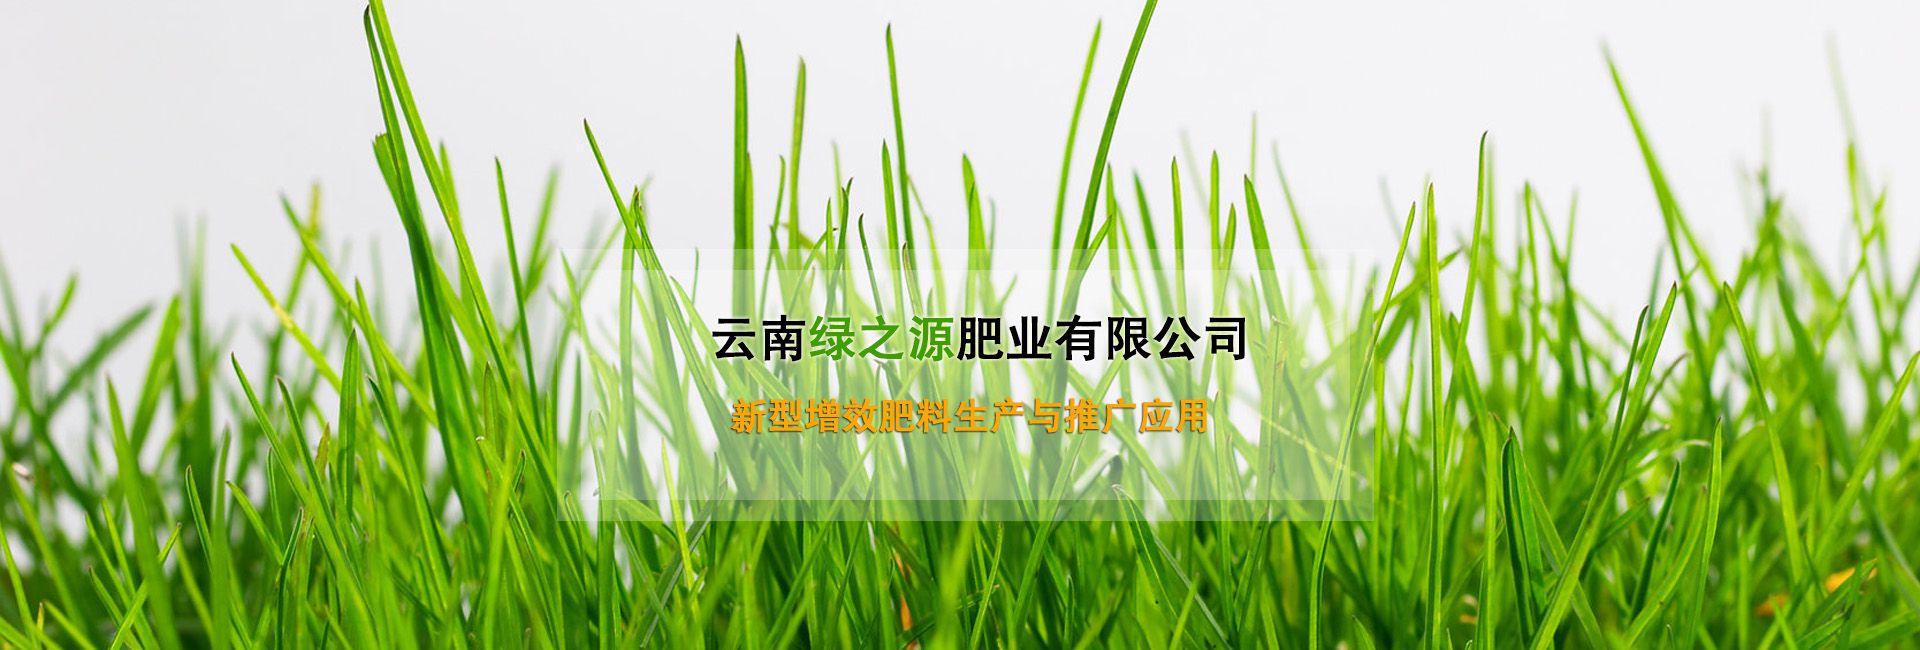 云南VWIN线上国际娱乐场肥业有限公司广告banner1